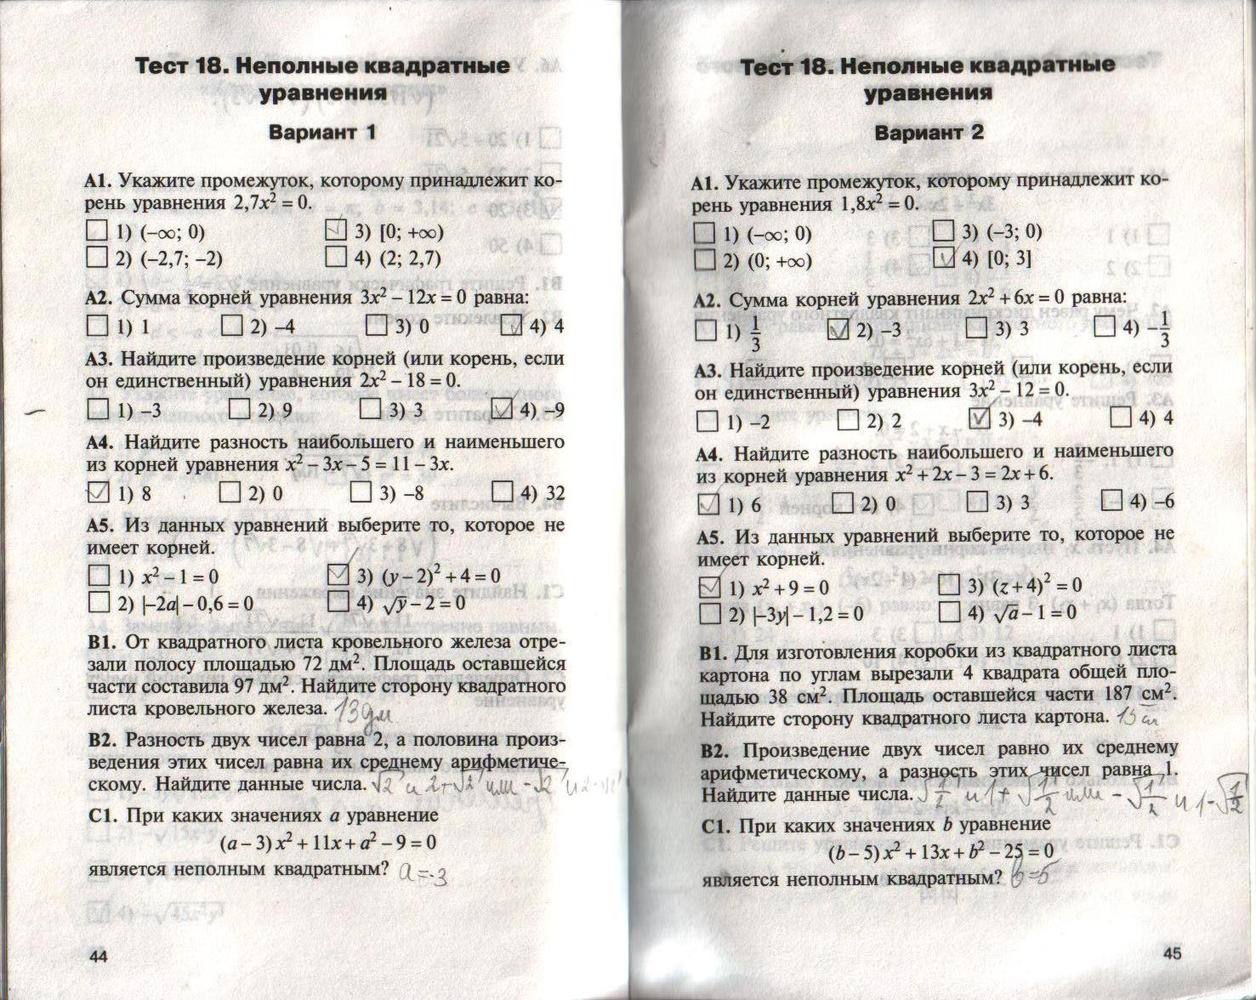 Тест 18 летней. Контрольно измерительные материалы Алгебра. Тест 18 неполные квадратные уравнения вариант 2 ответы.